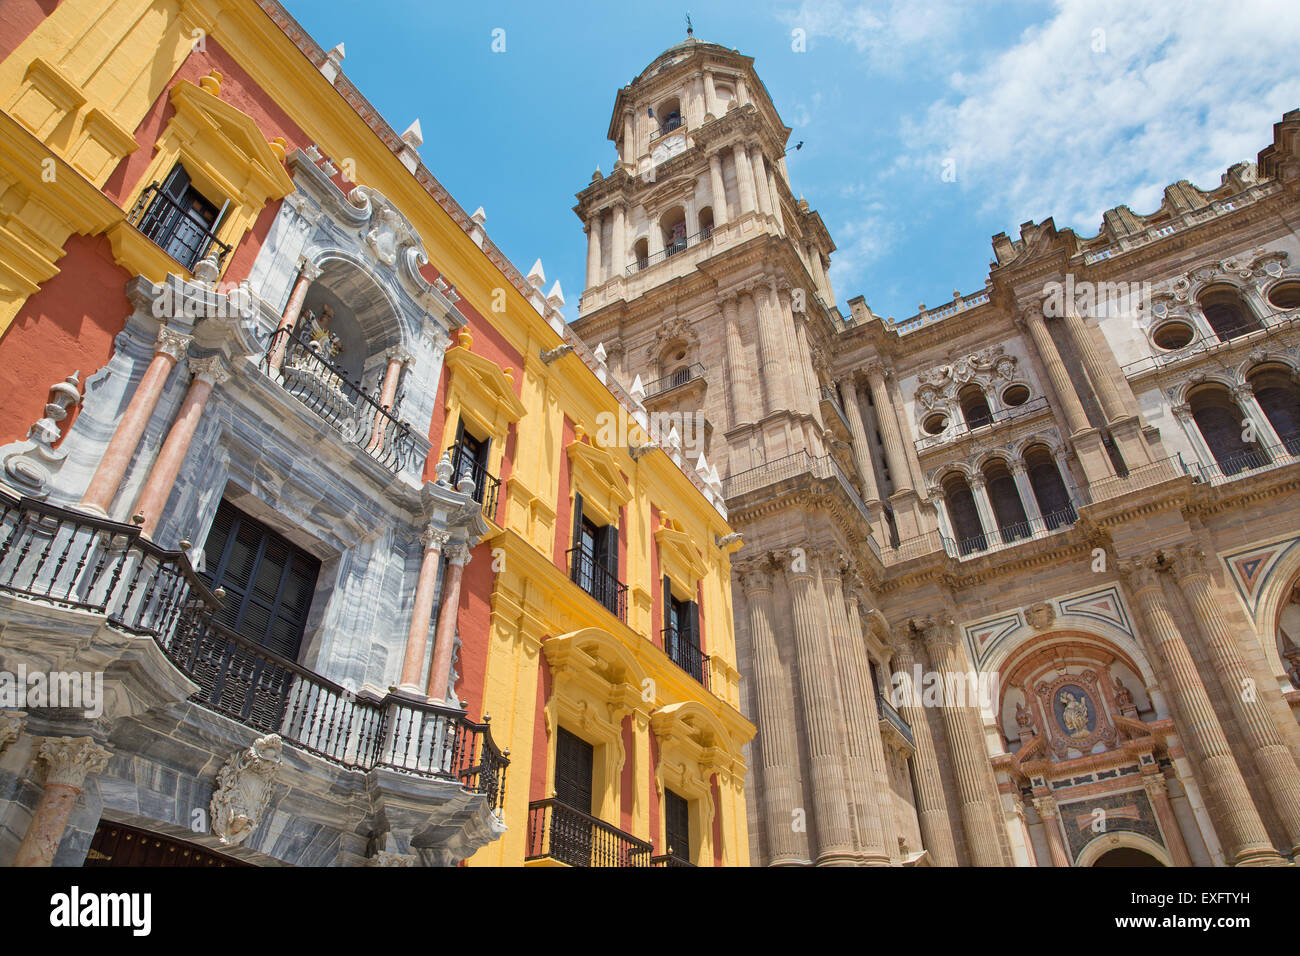 Malaga - La torre della cattedrale e la facciata barocca del Palazzo dei vescovi. Foto Stock